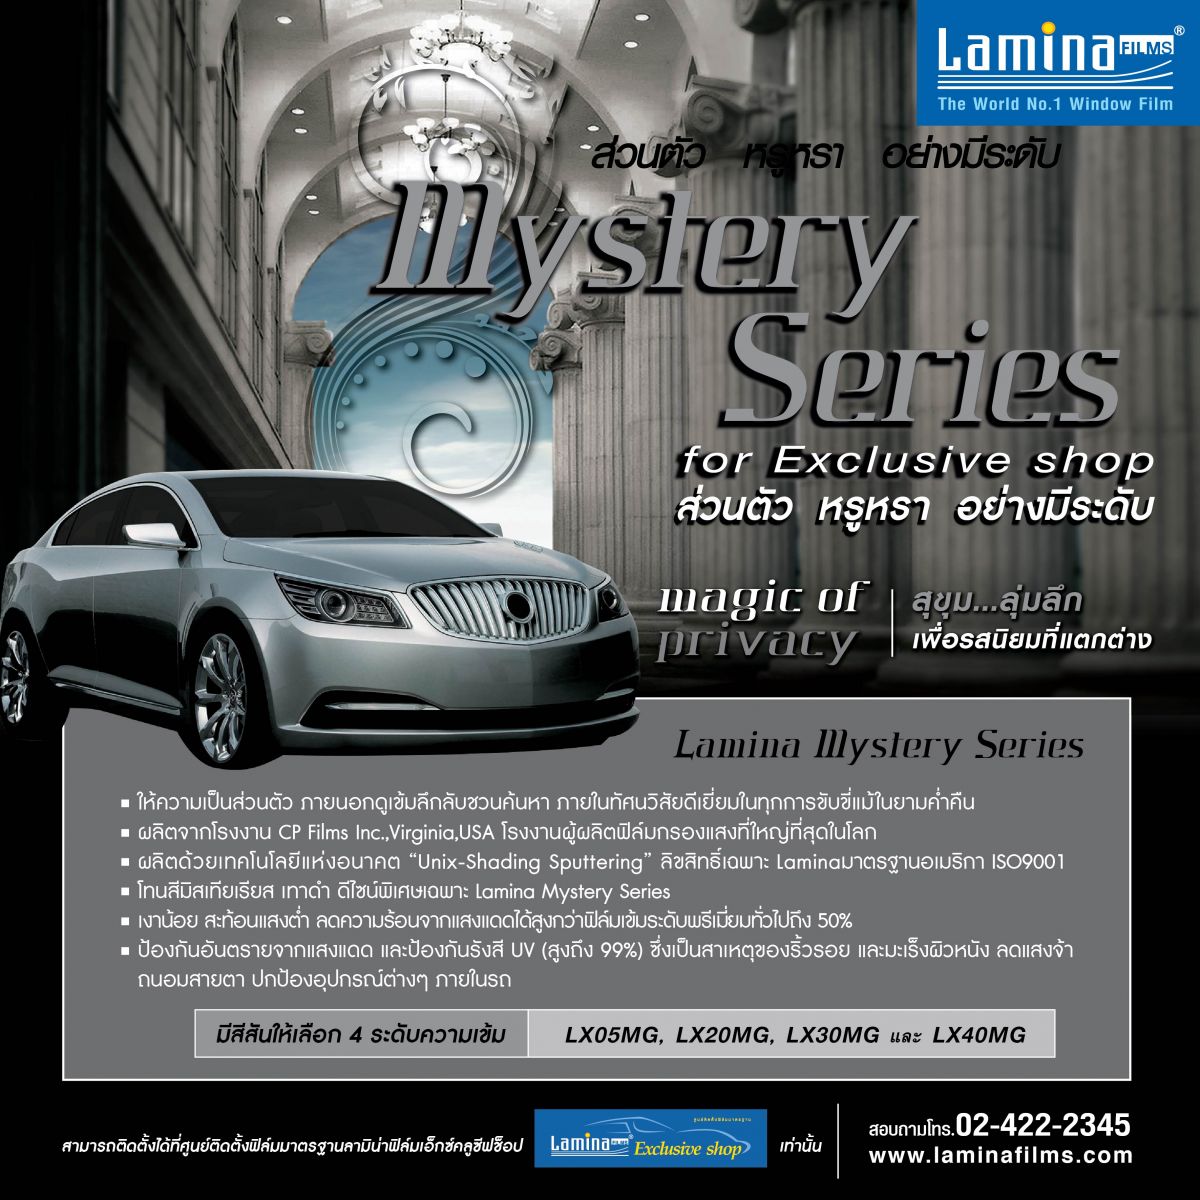  ฟิล์มรถยนต์ลามิน่า Lamina Mystery Series : Magic of Privacy : For Exclusive Shop รูปที่ 1